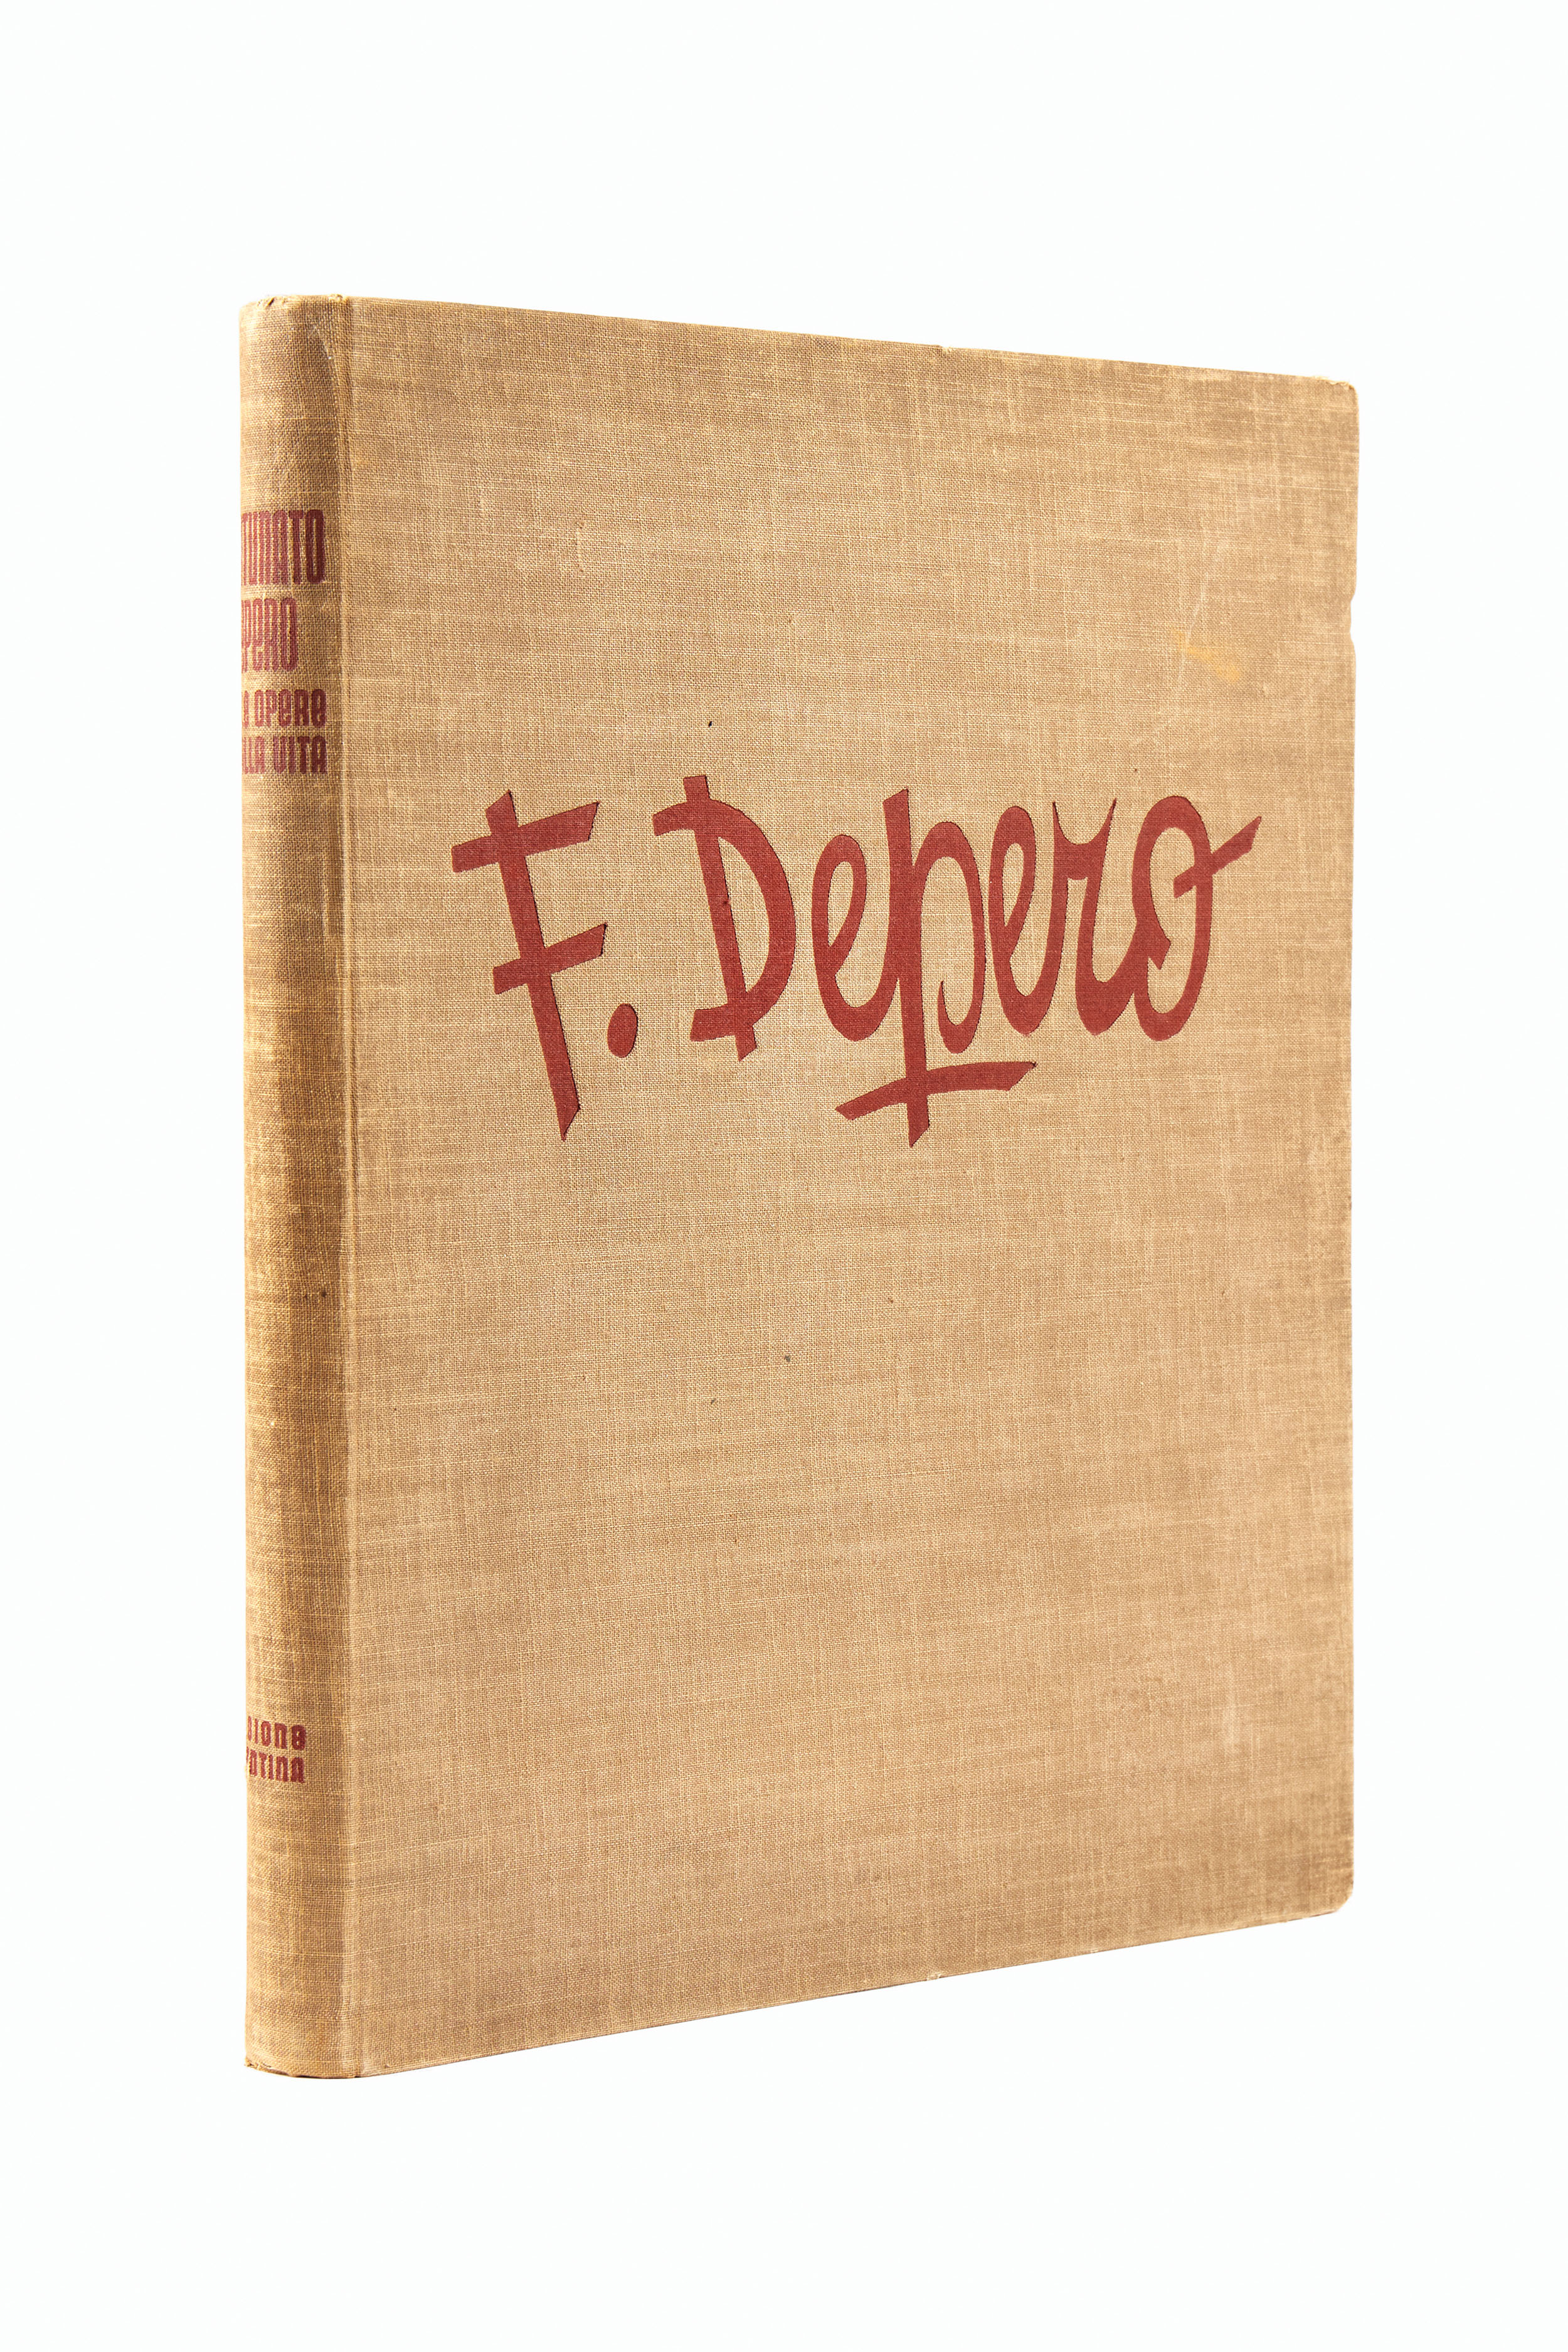 DEPERO, Fortunato (1892-1960). Fortunato Depero nelle opere e nella ...